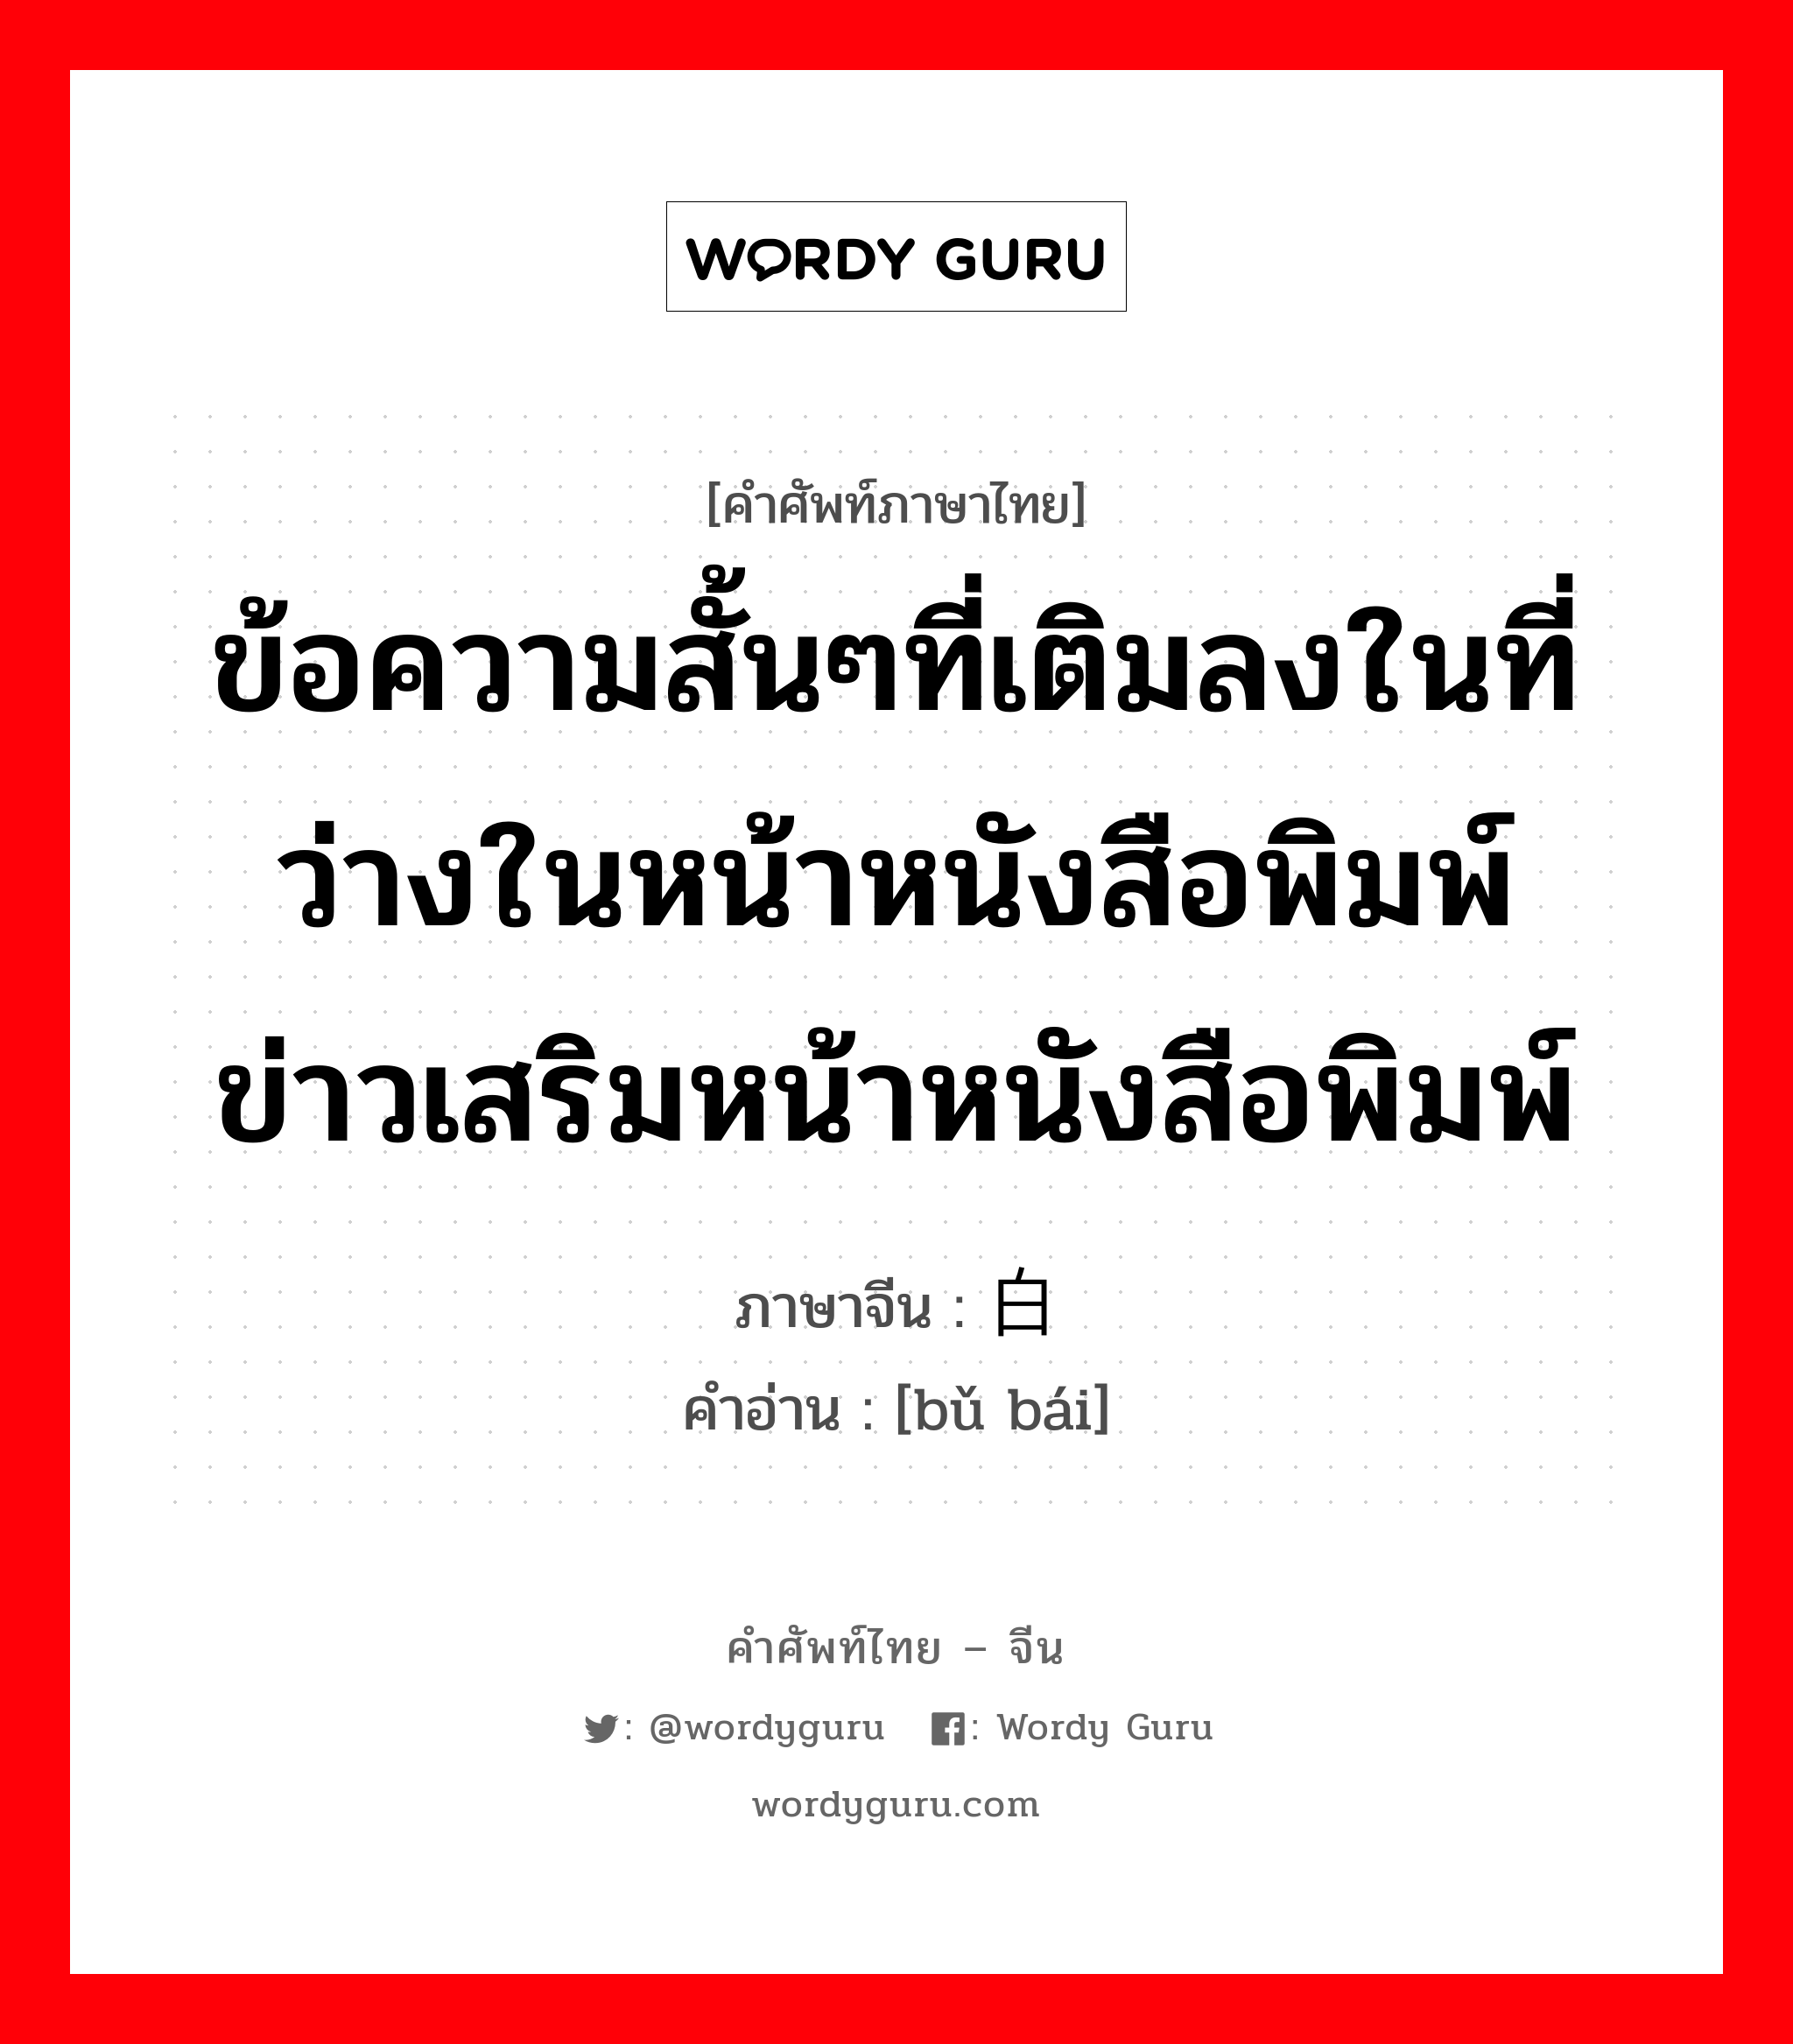 ข้อความสั้นๆที่เติมลงในที่ว่างในหน้าหนังสือพิมพ์ ข่าวเสริมหน้าหนังสือพิมพ์ ภาษาจีนคืออะไร, คำศัพท์ภาษาไทย - จีน ข้อความสั้นๆที่เติมลงในที่ว่างในหน้าหนังสือพิมพ์ ข่าวเสริมหน้าหนังสือพิมพ์ ภาษาจีน 补白 คำอ่าน [bǔ bái]